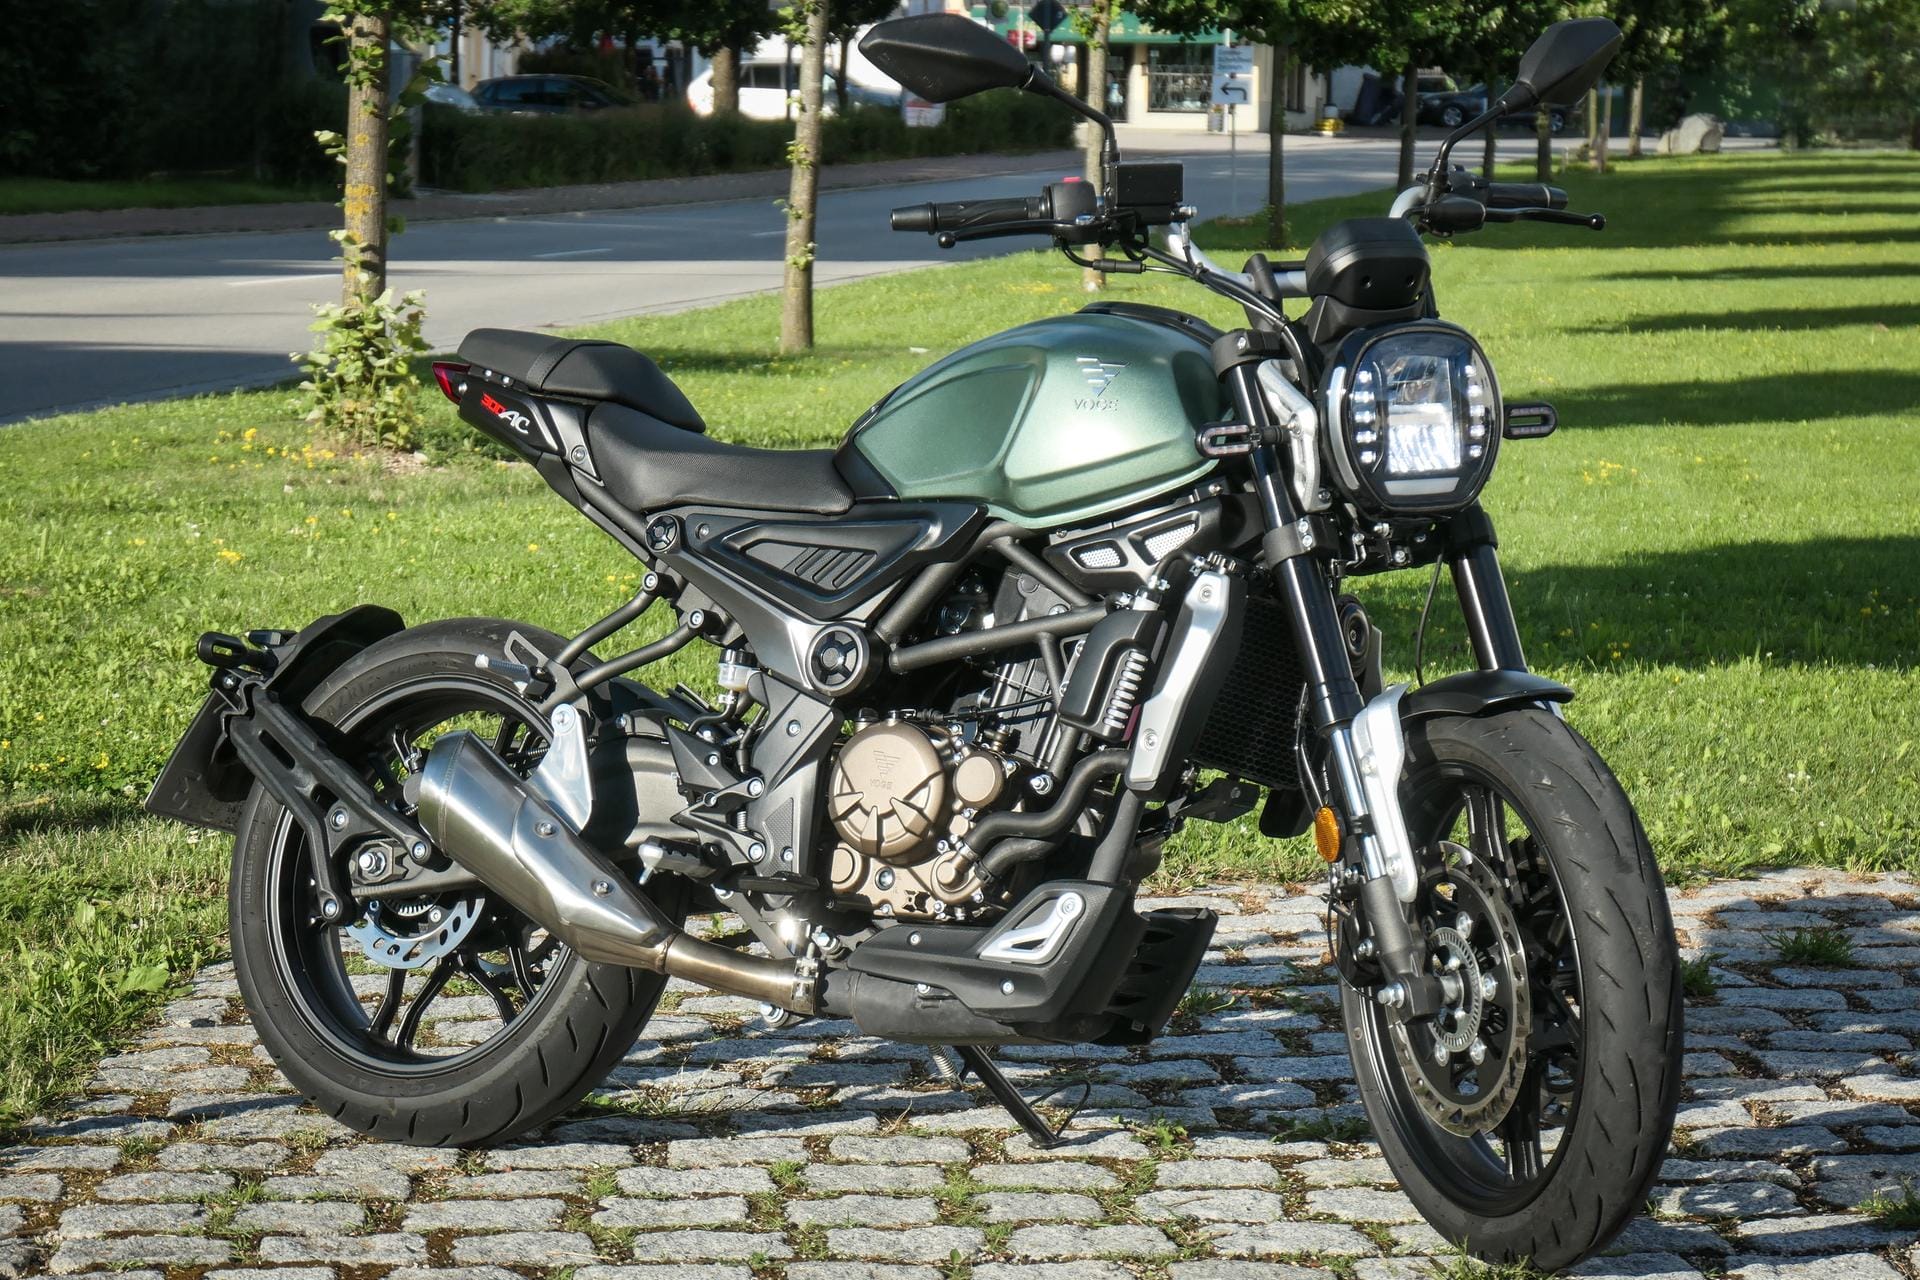 Ein Neuzugang im Modellprogramm von Voge ist die 300 AV – ein einfach gestricktes und modern gezeichnetes Naked Bike mit 19 kW/26 PS starkem Einzylinder.